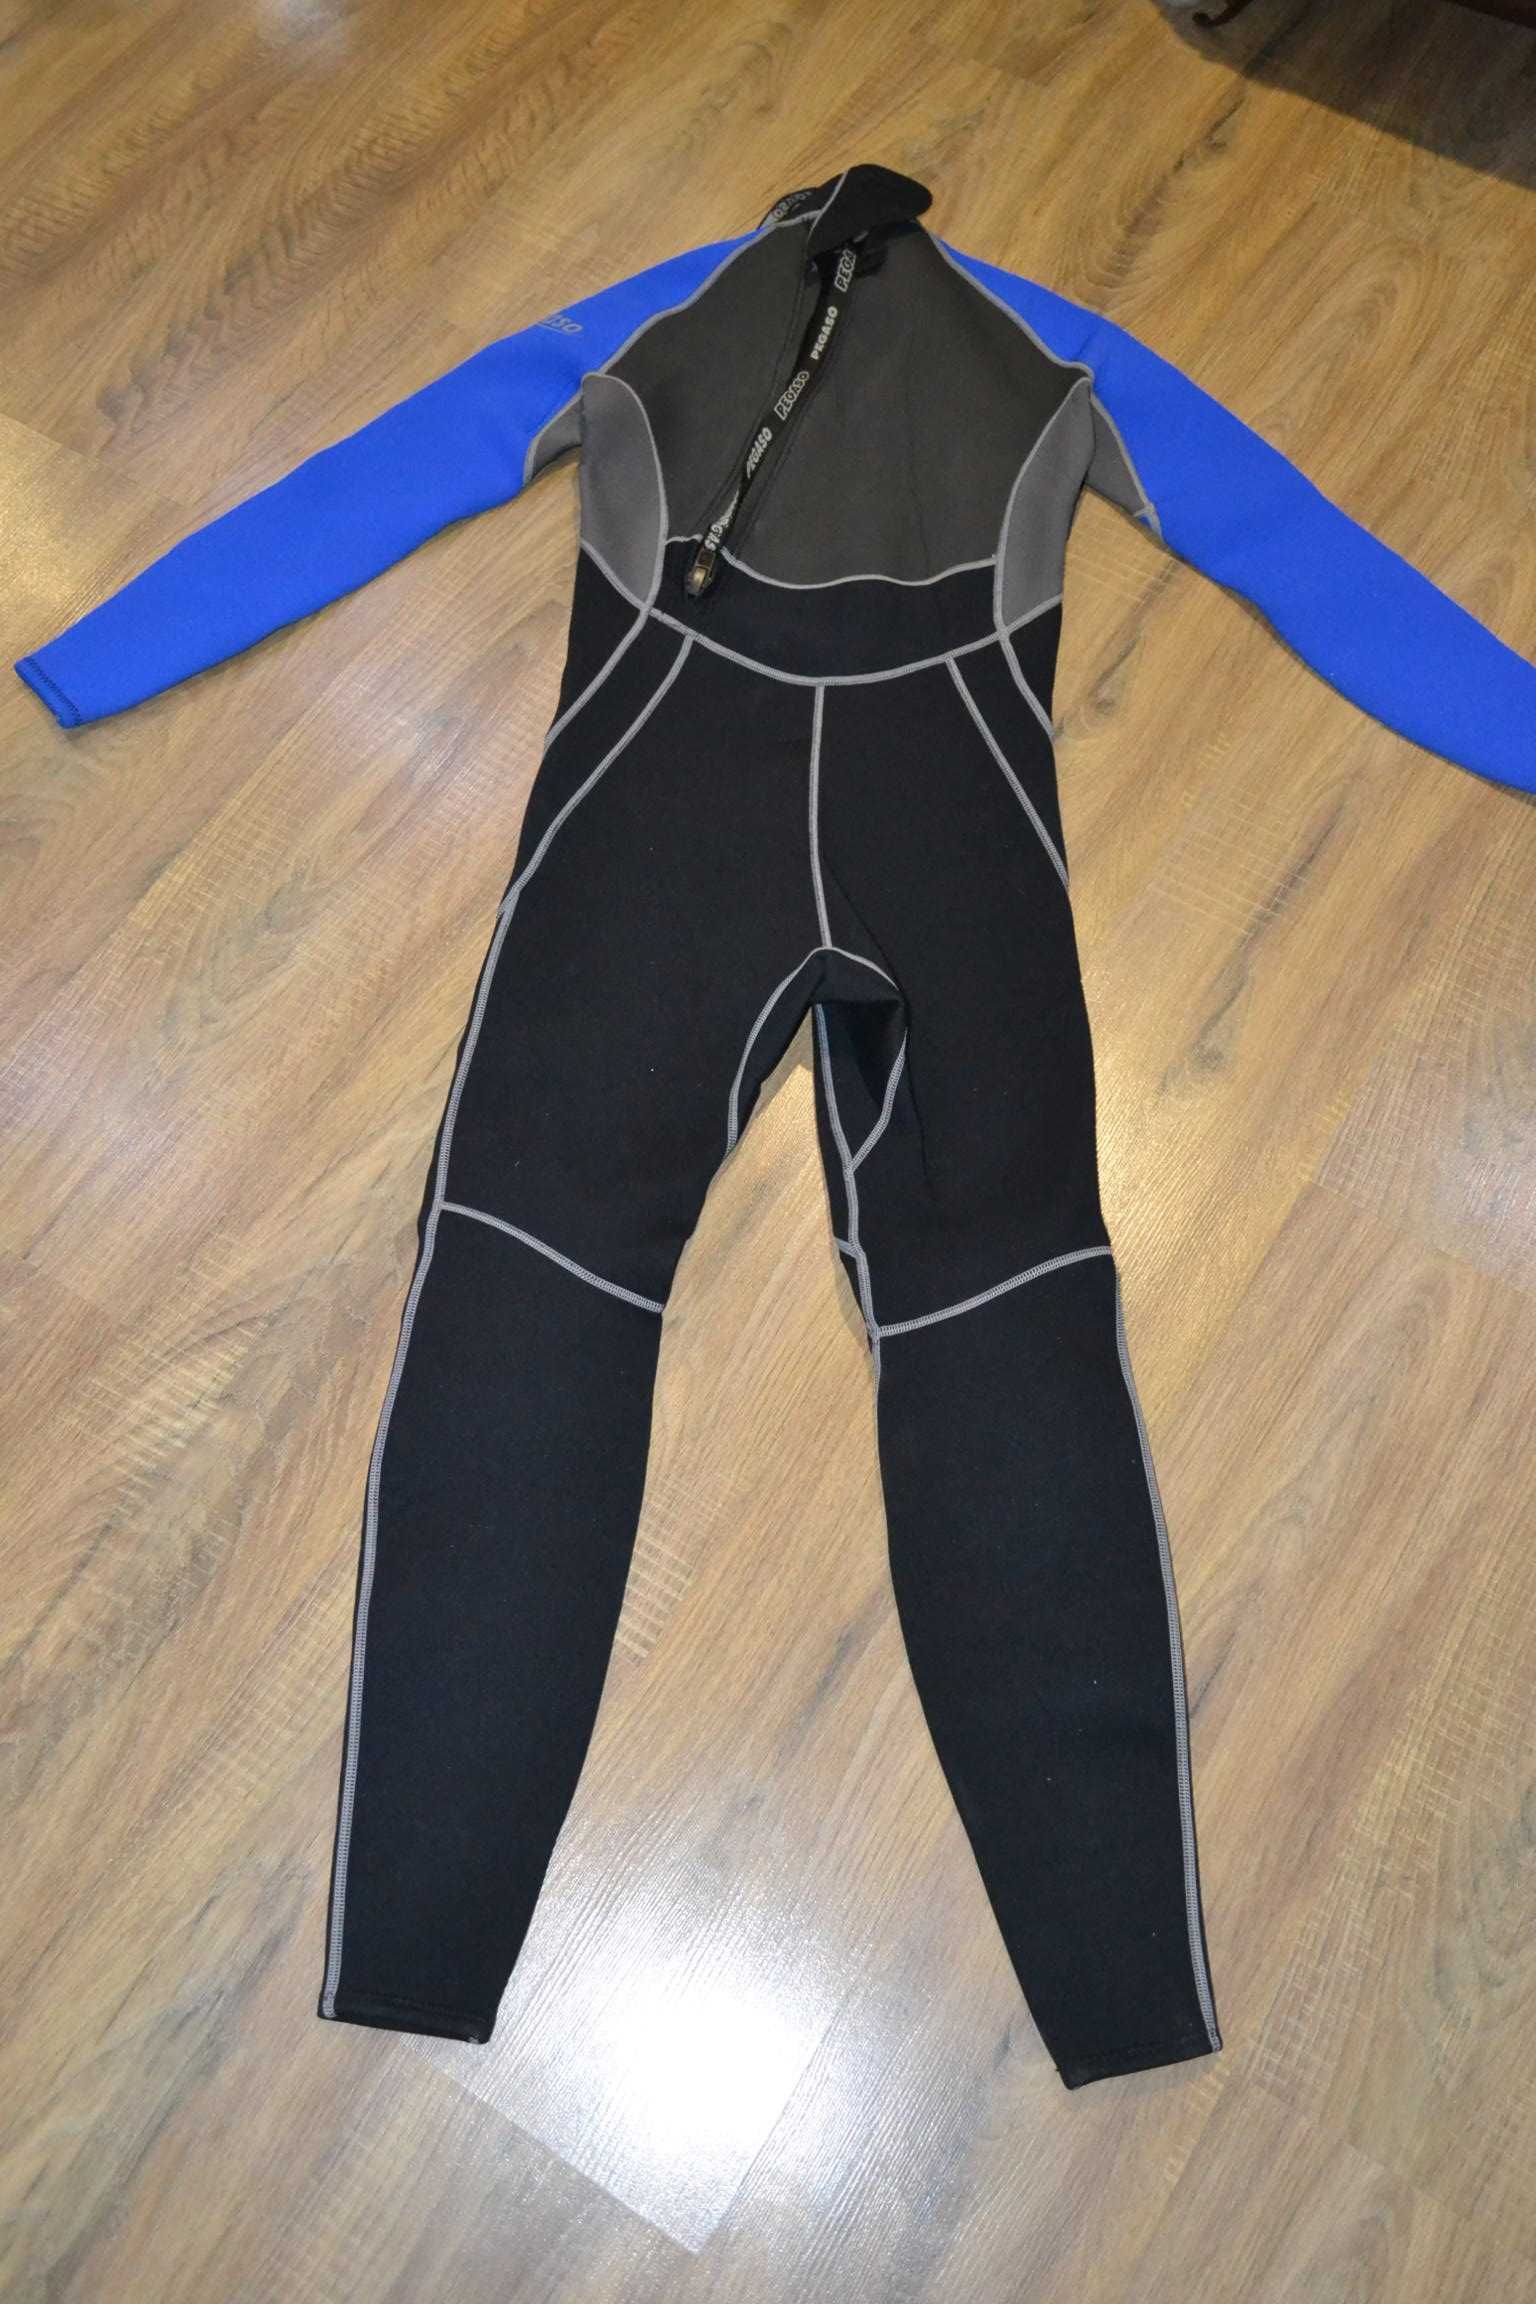 Pegaso S гидрокостюм 3мм гидрик, водный костюм мужской